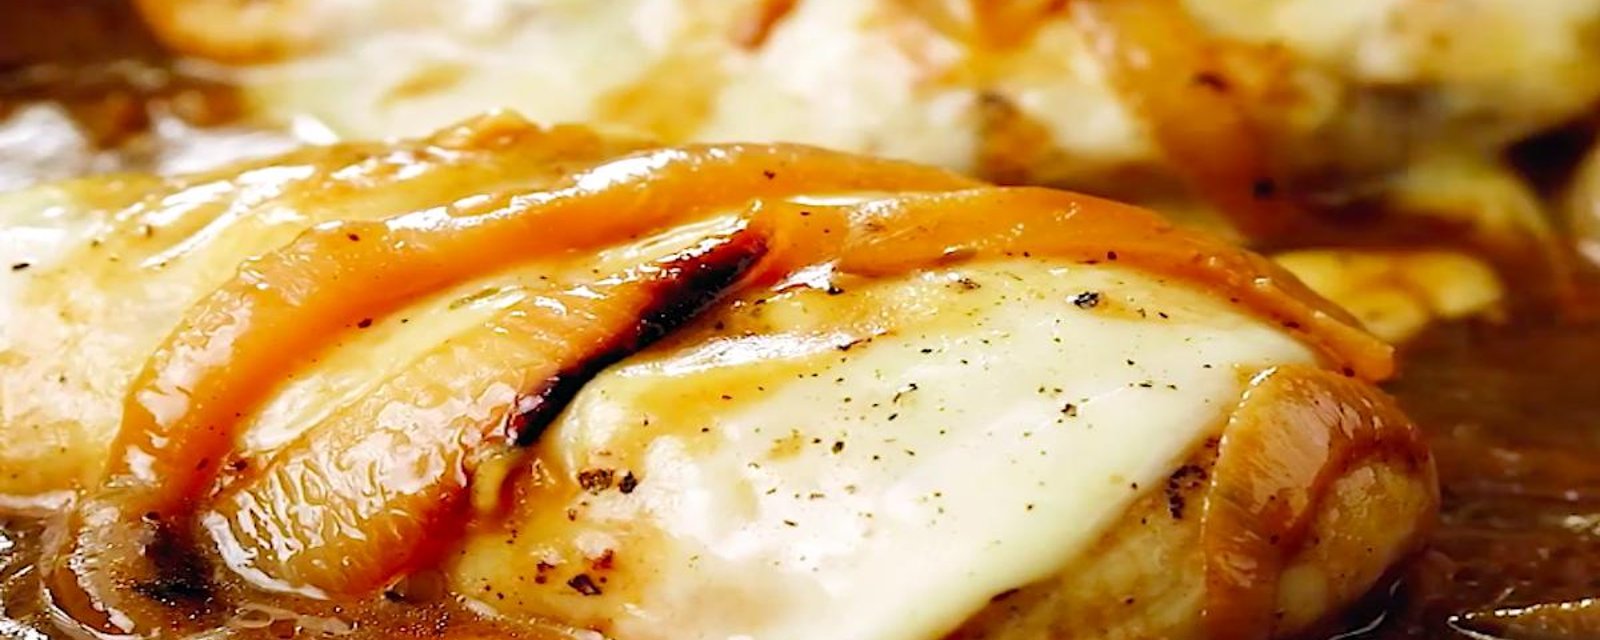 Poitrines de poulet, sauce aux oignons caramélisés et fromage fondu; la recette parfaite!